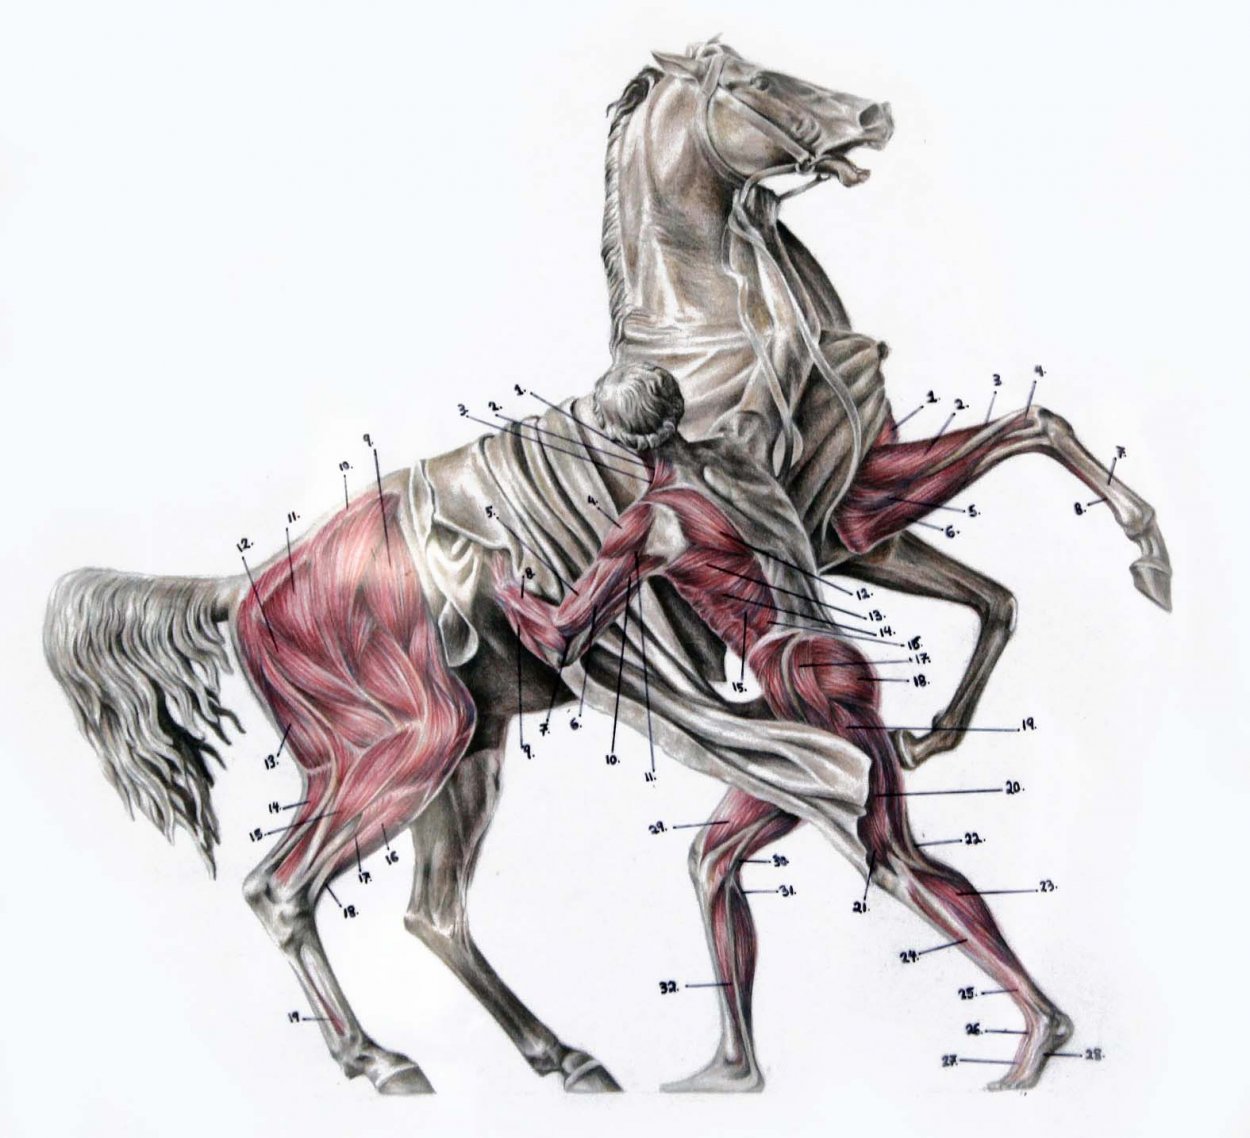 Анатомия лошади: строение скелета, черепа и морды, характеристика различных частей тела